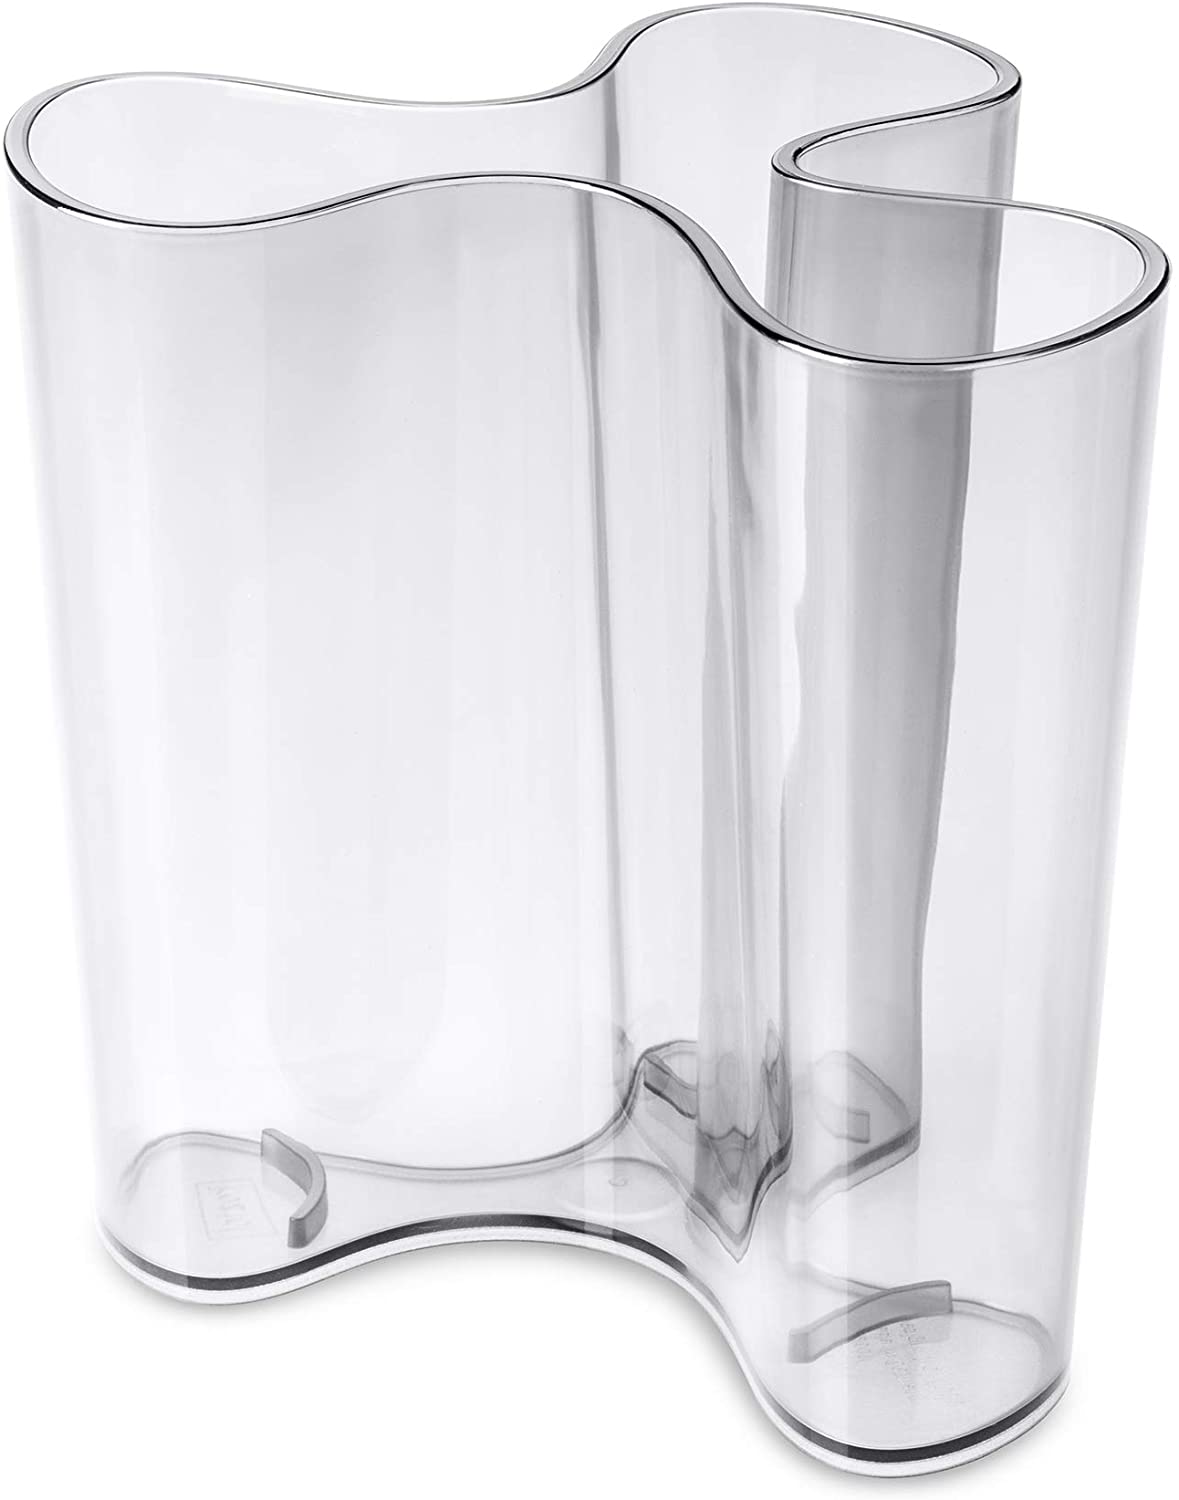 koziol Vase Clara M, plastic, transparent, clear, 10.3 x 11.4 x 10.9 cm